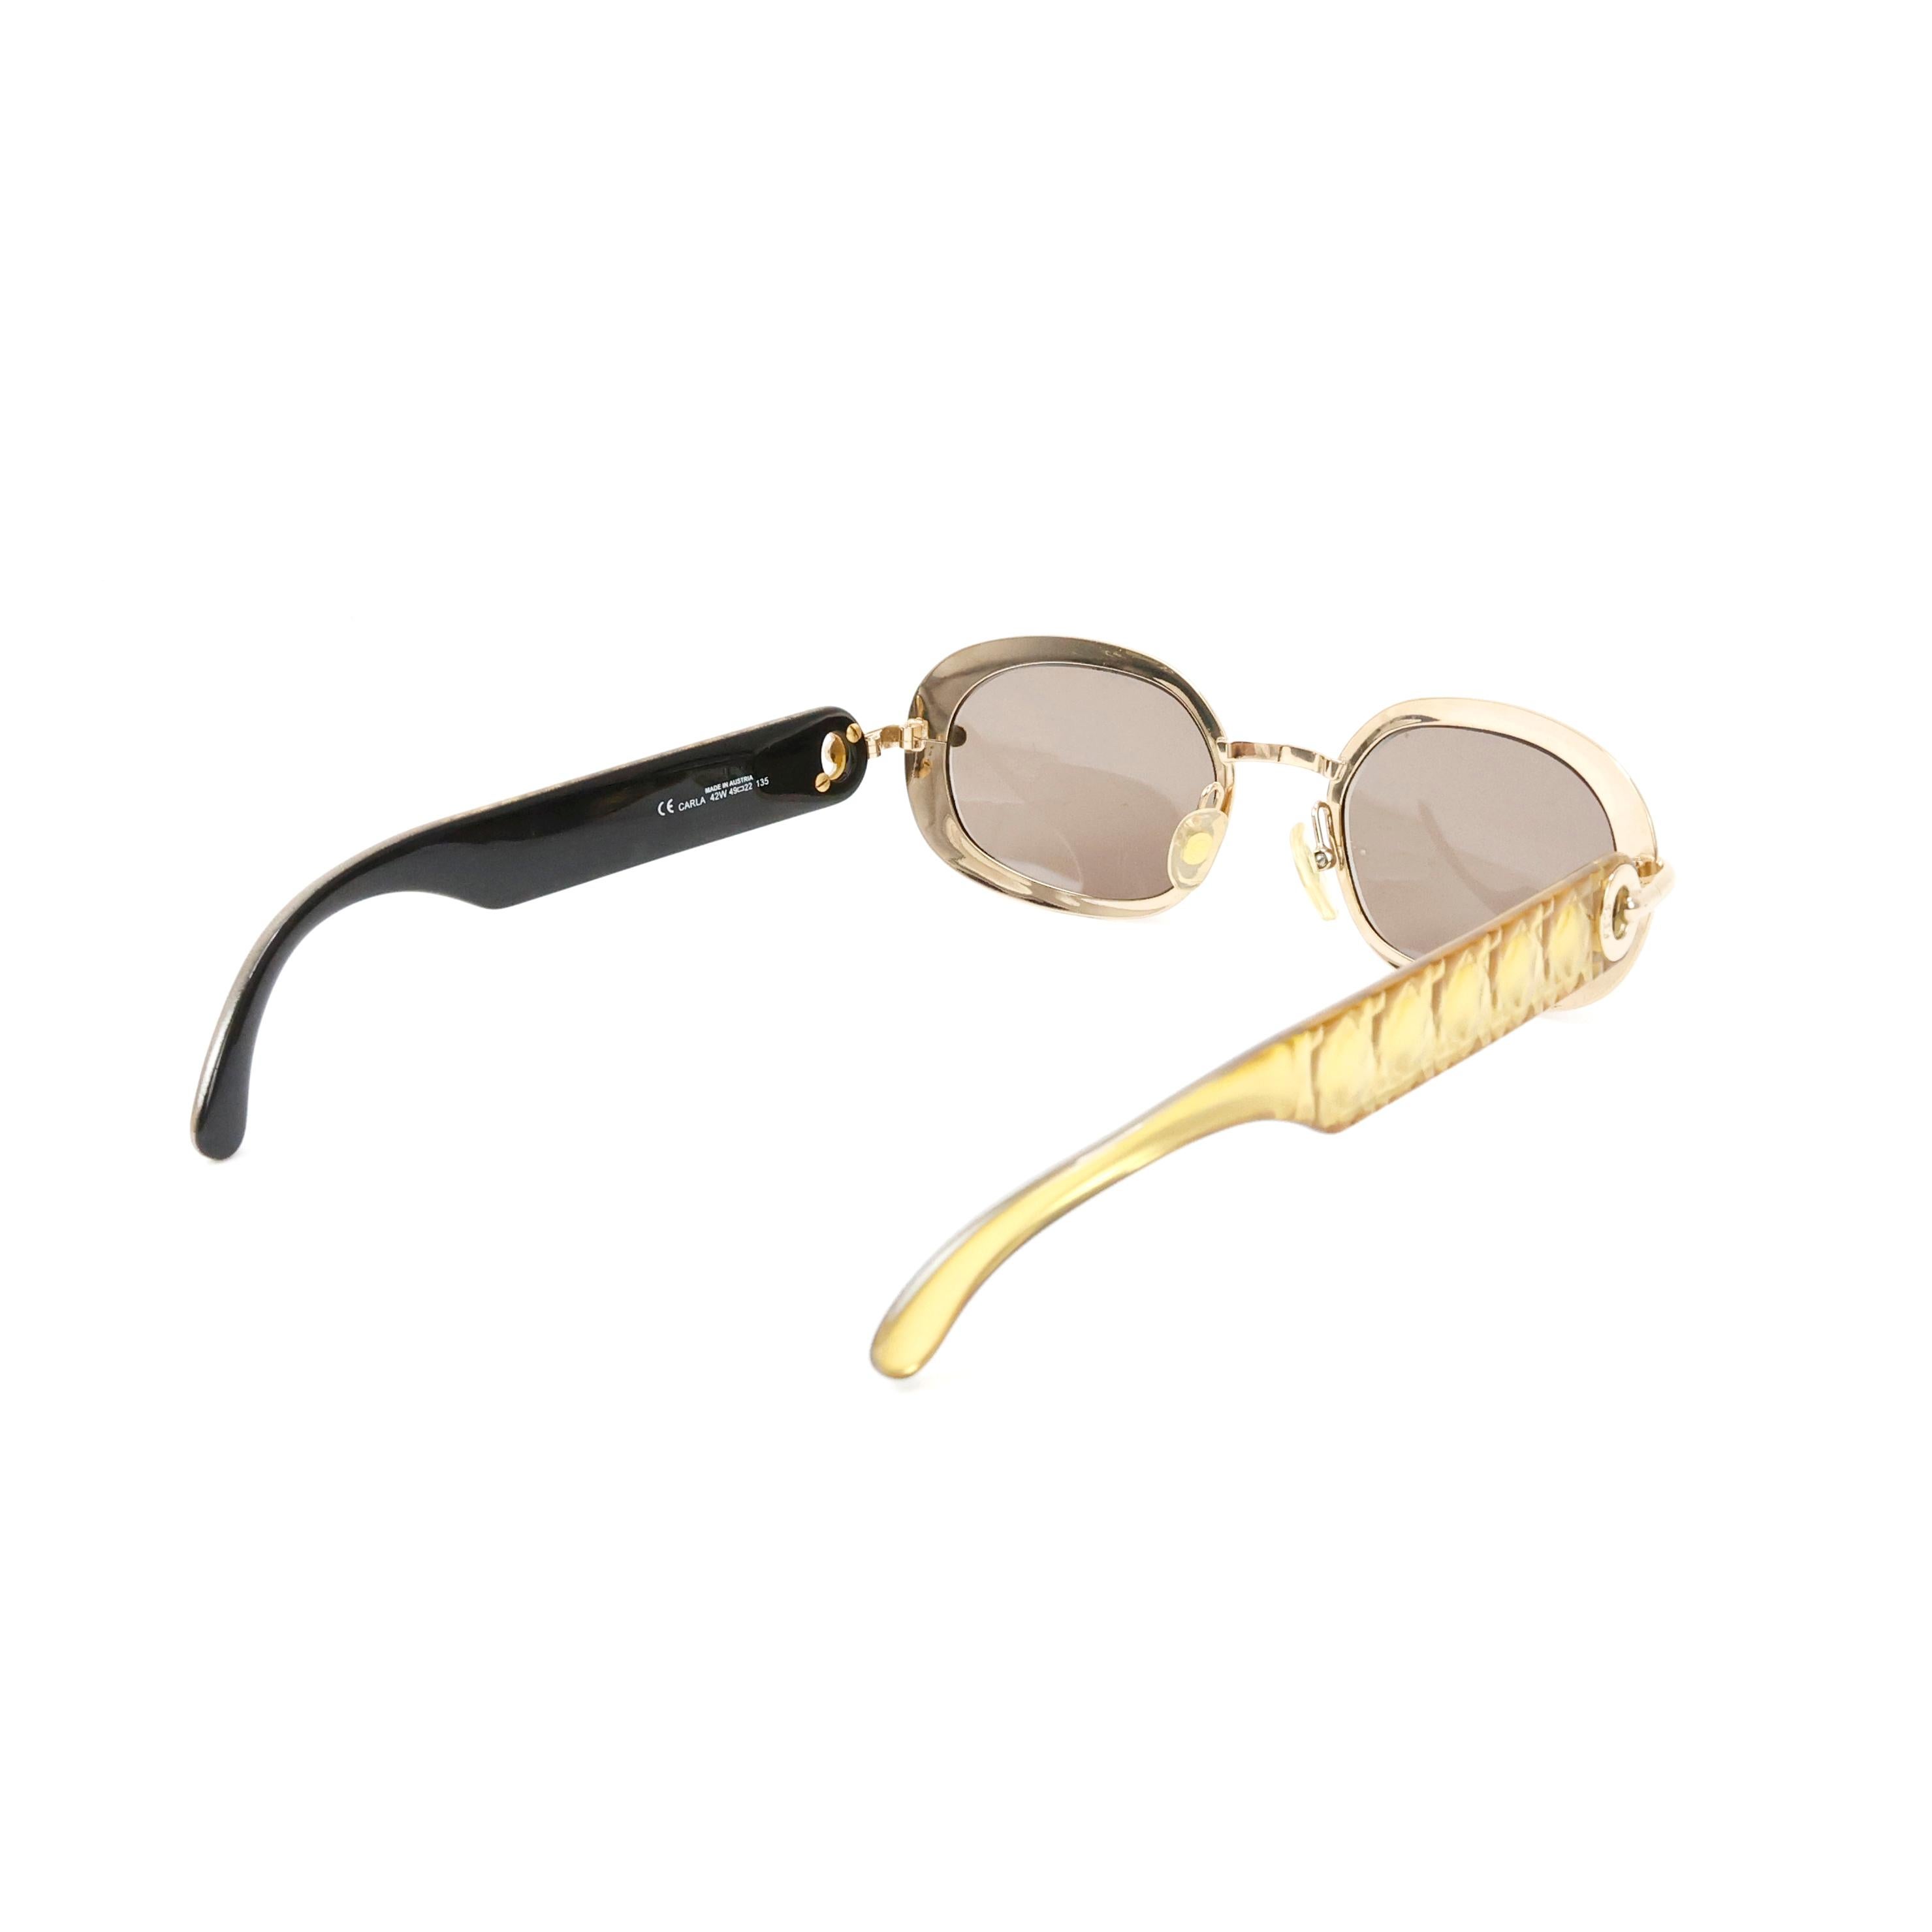 Christian Dior runde metallische Sonnenbrille Farbe Gold. 


Bedingung:
Wirklich gut.